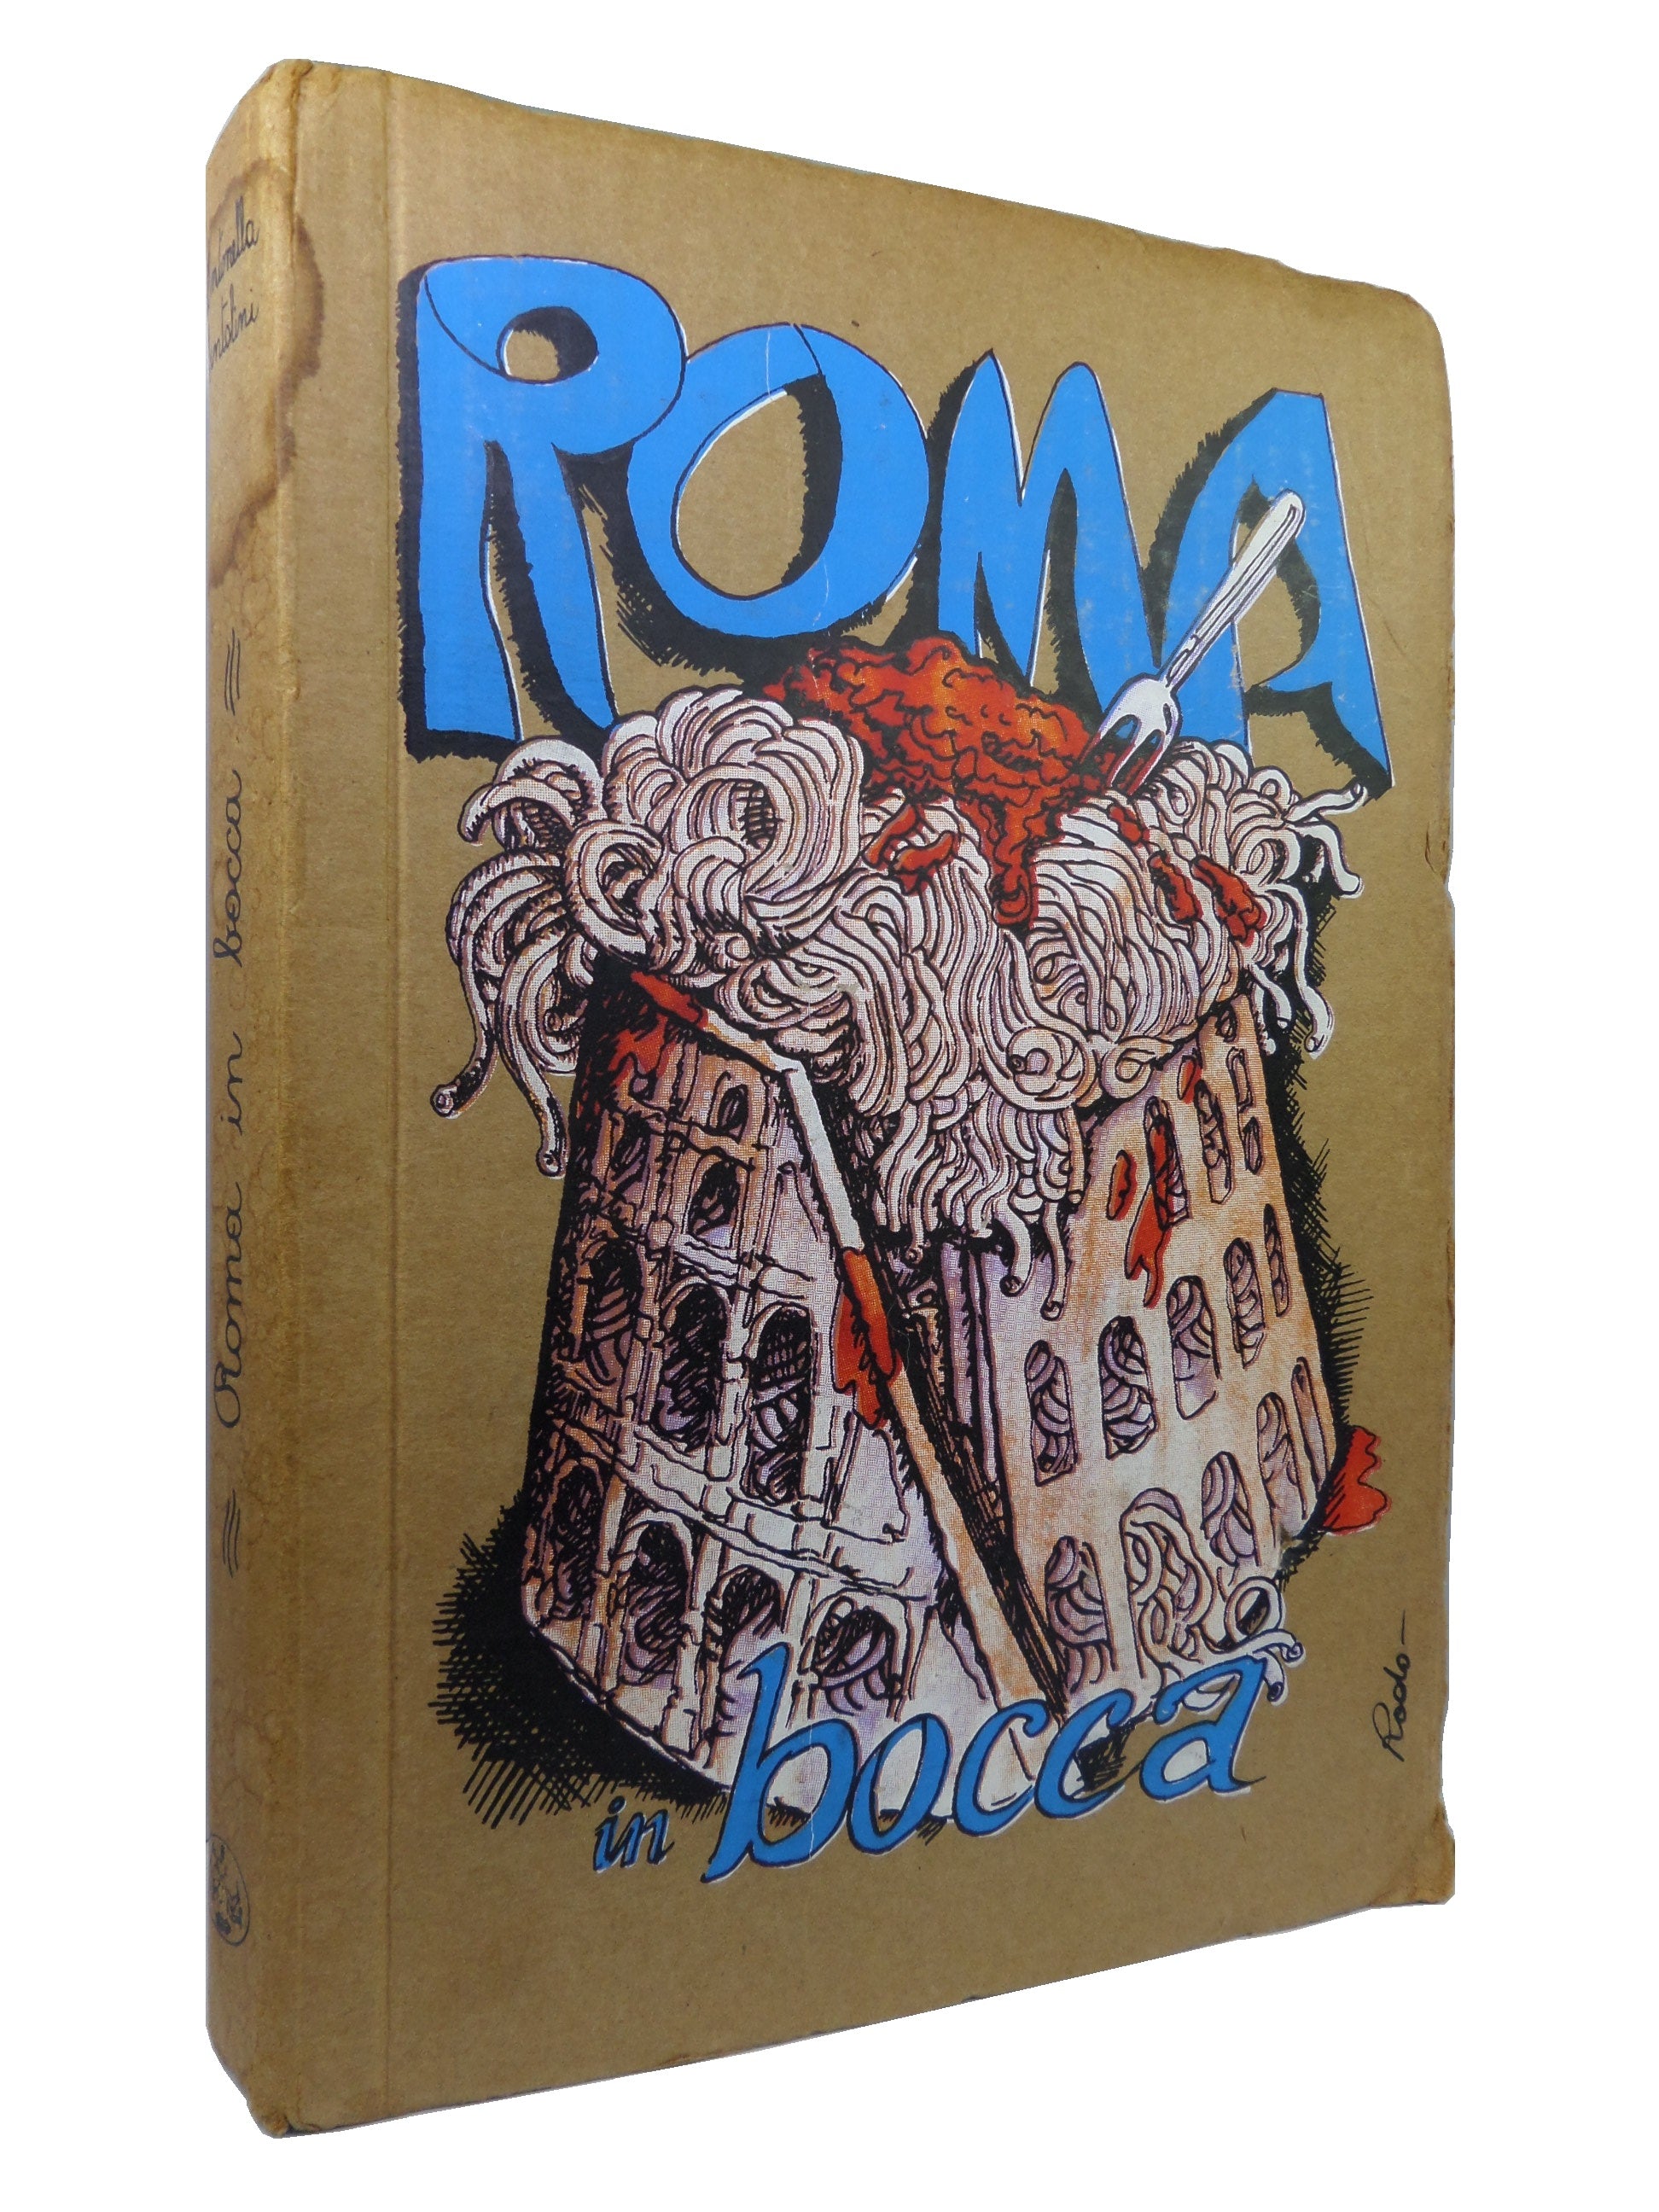 ROMA IN BOCCA BY ANTONELLA SANTOLINI 1985 HARDCOVER COOKBOOK